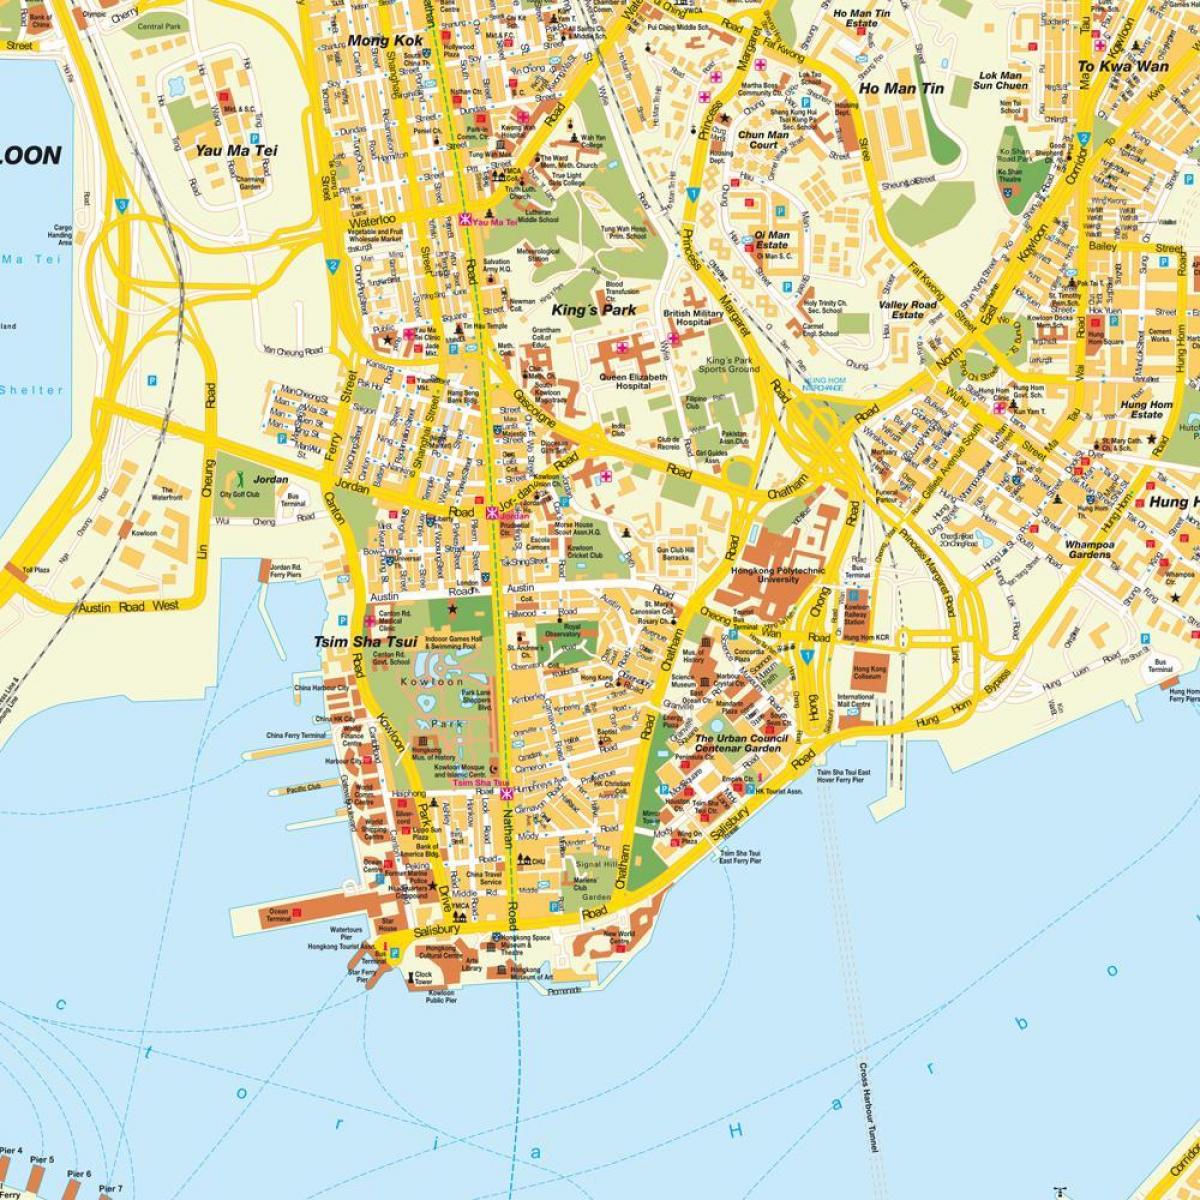 Hong Kong city map